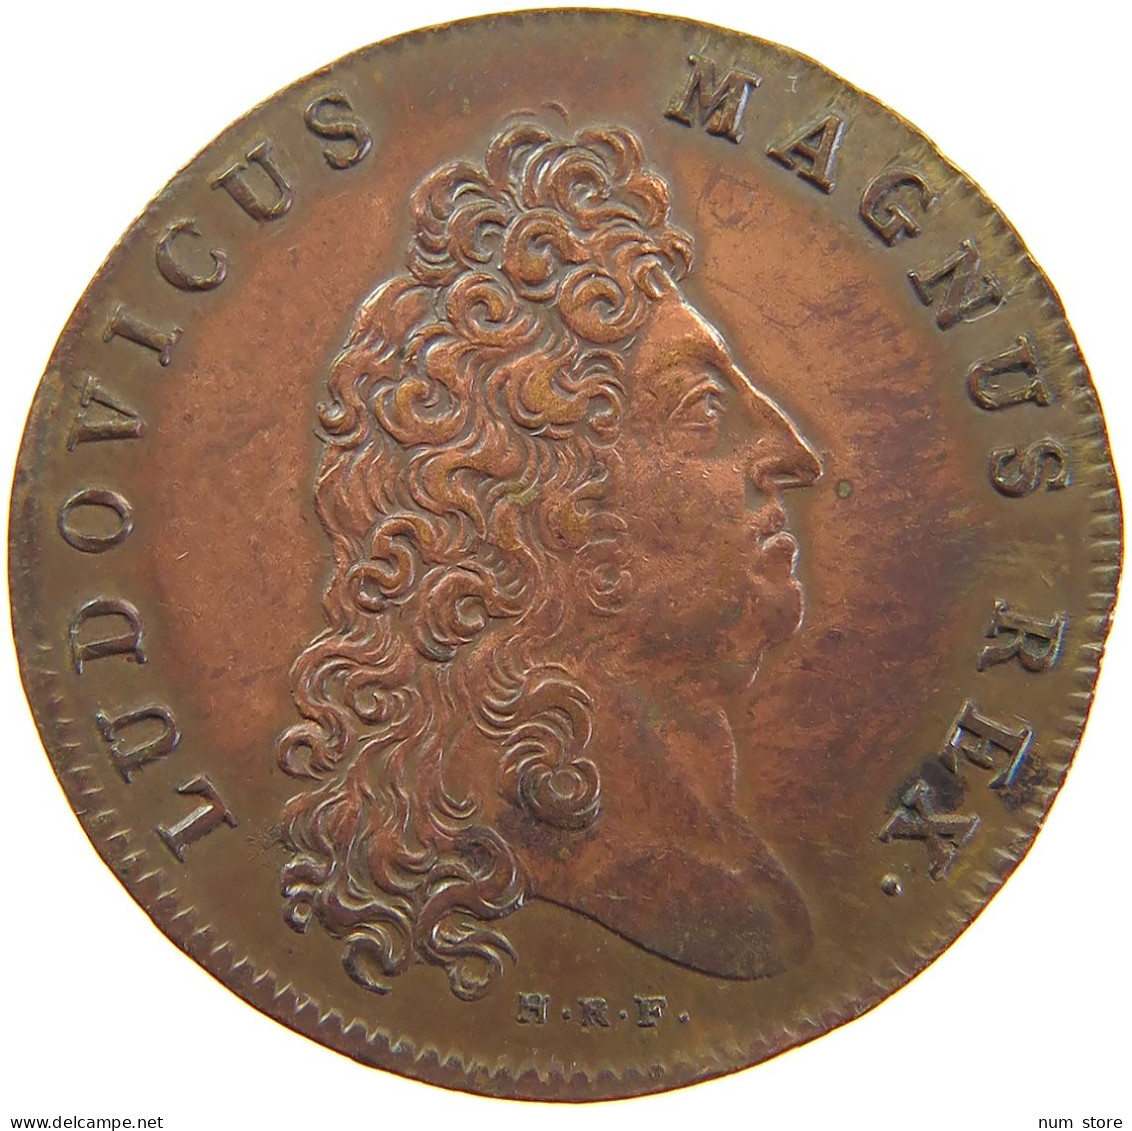 FRANCE MEDAILLE 1700 Louis XIV. (1643–1715) CHAMBRE AUX DENIERS CHAMBRE AUX DENIERS 1700 #sm05 1025 - Royal / Of Nobility